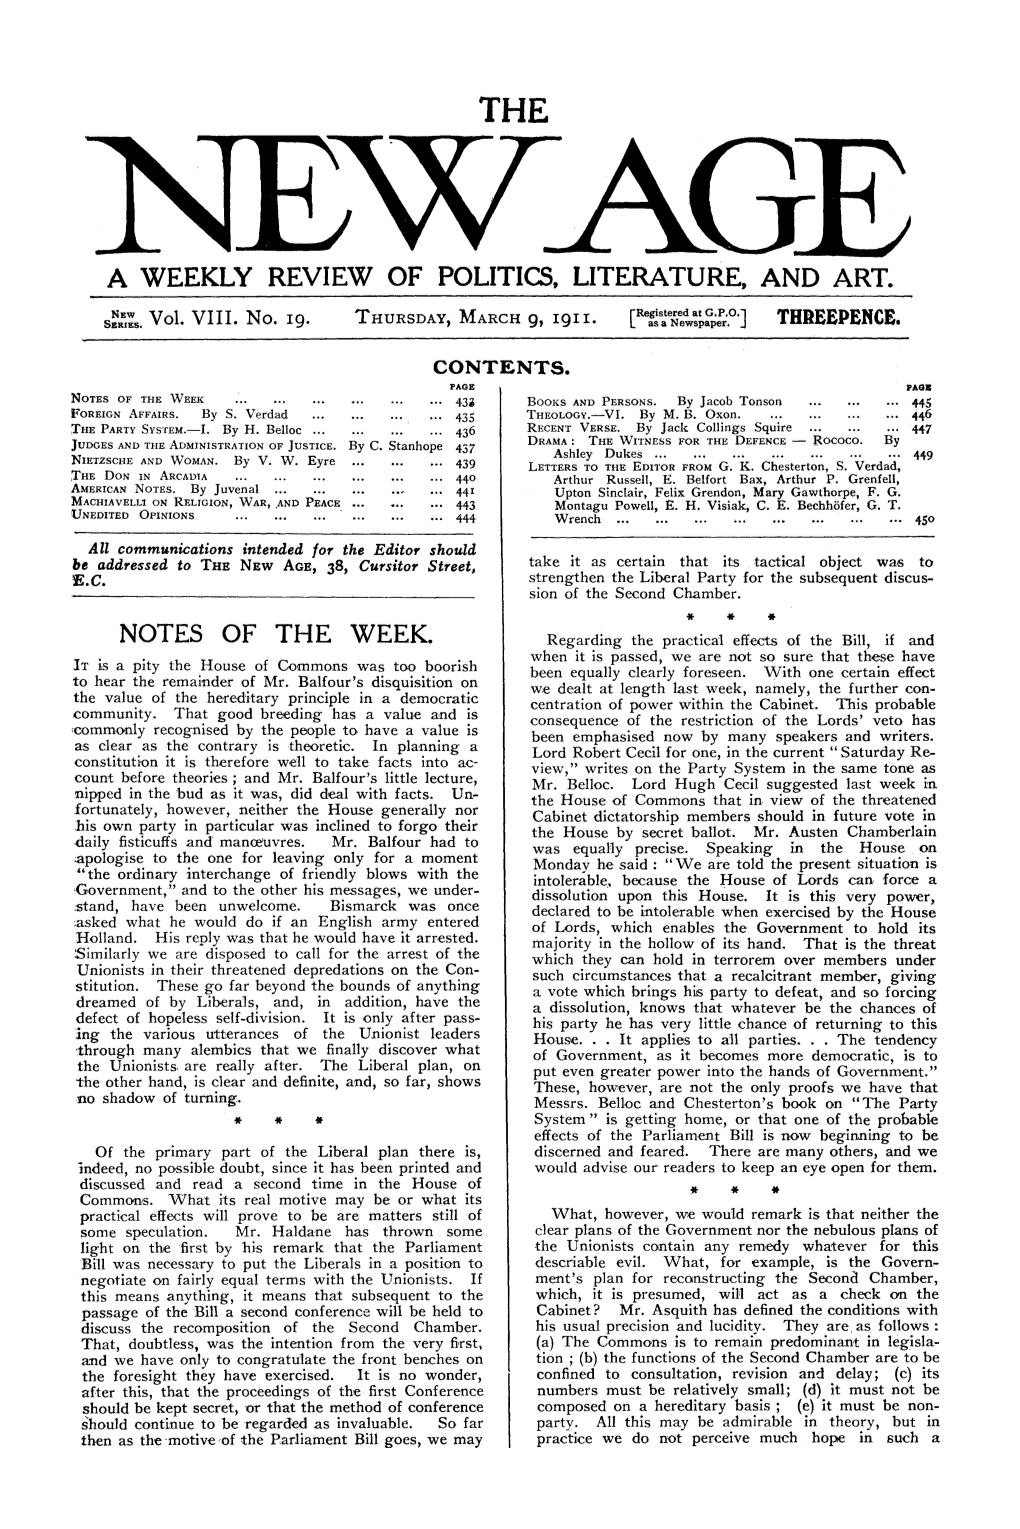 New Age, Vol. 8, No.19, Mar. 9, 1911